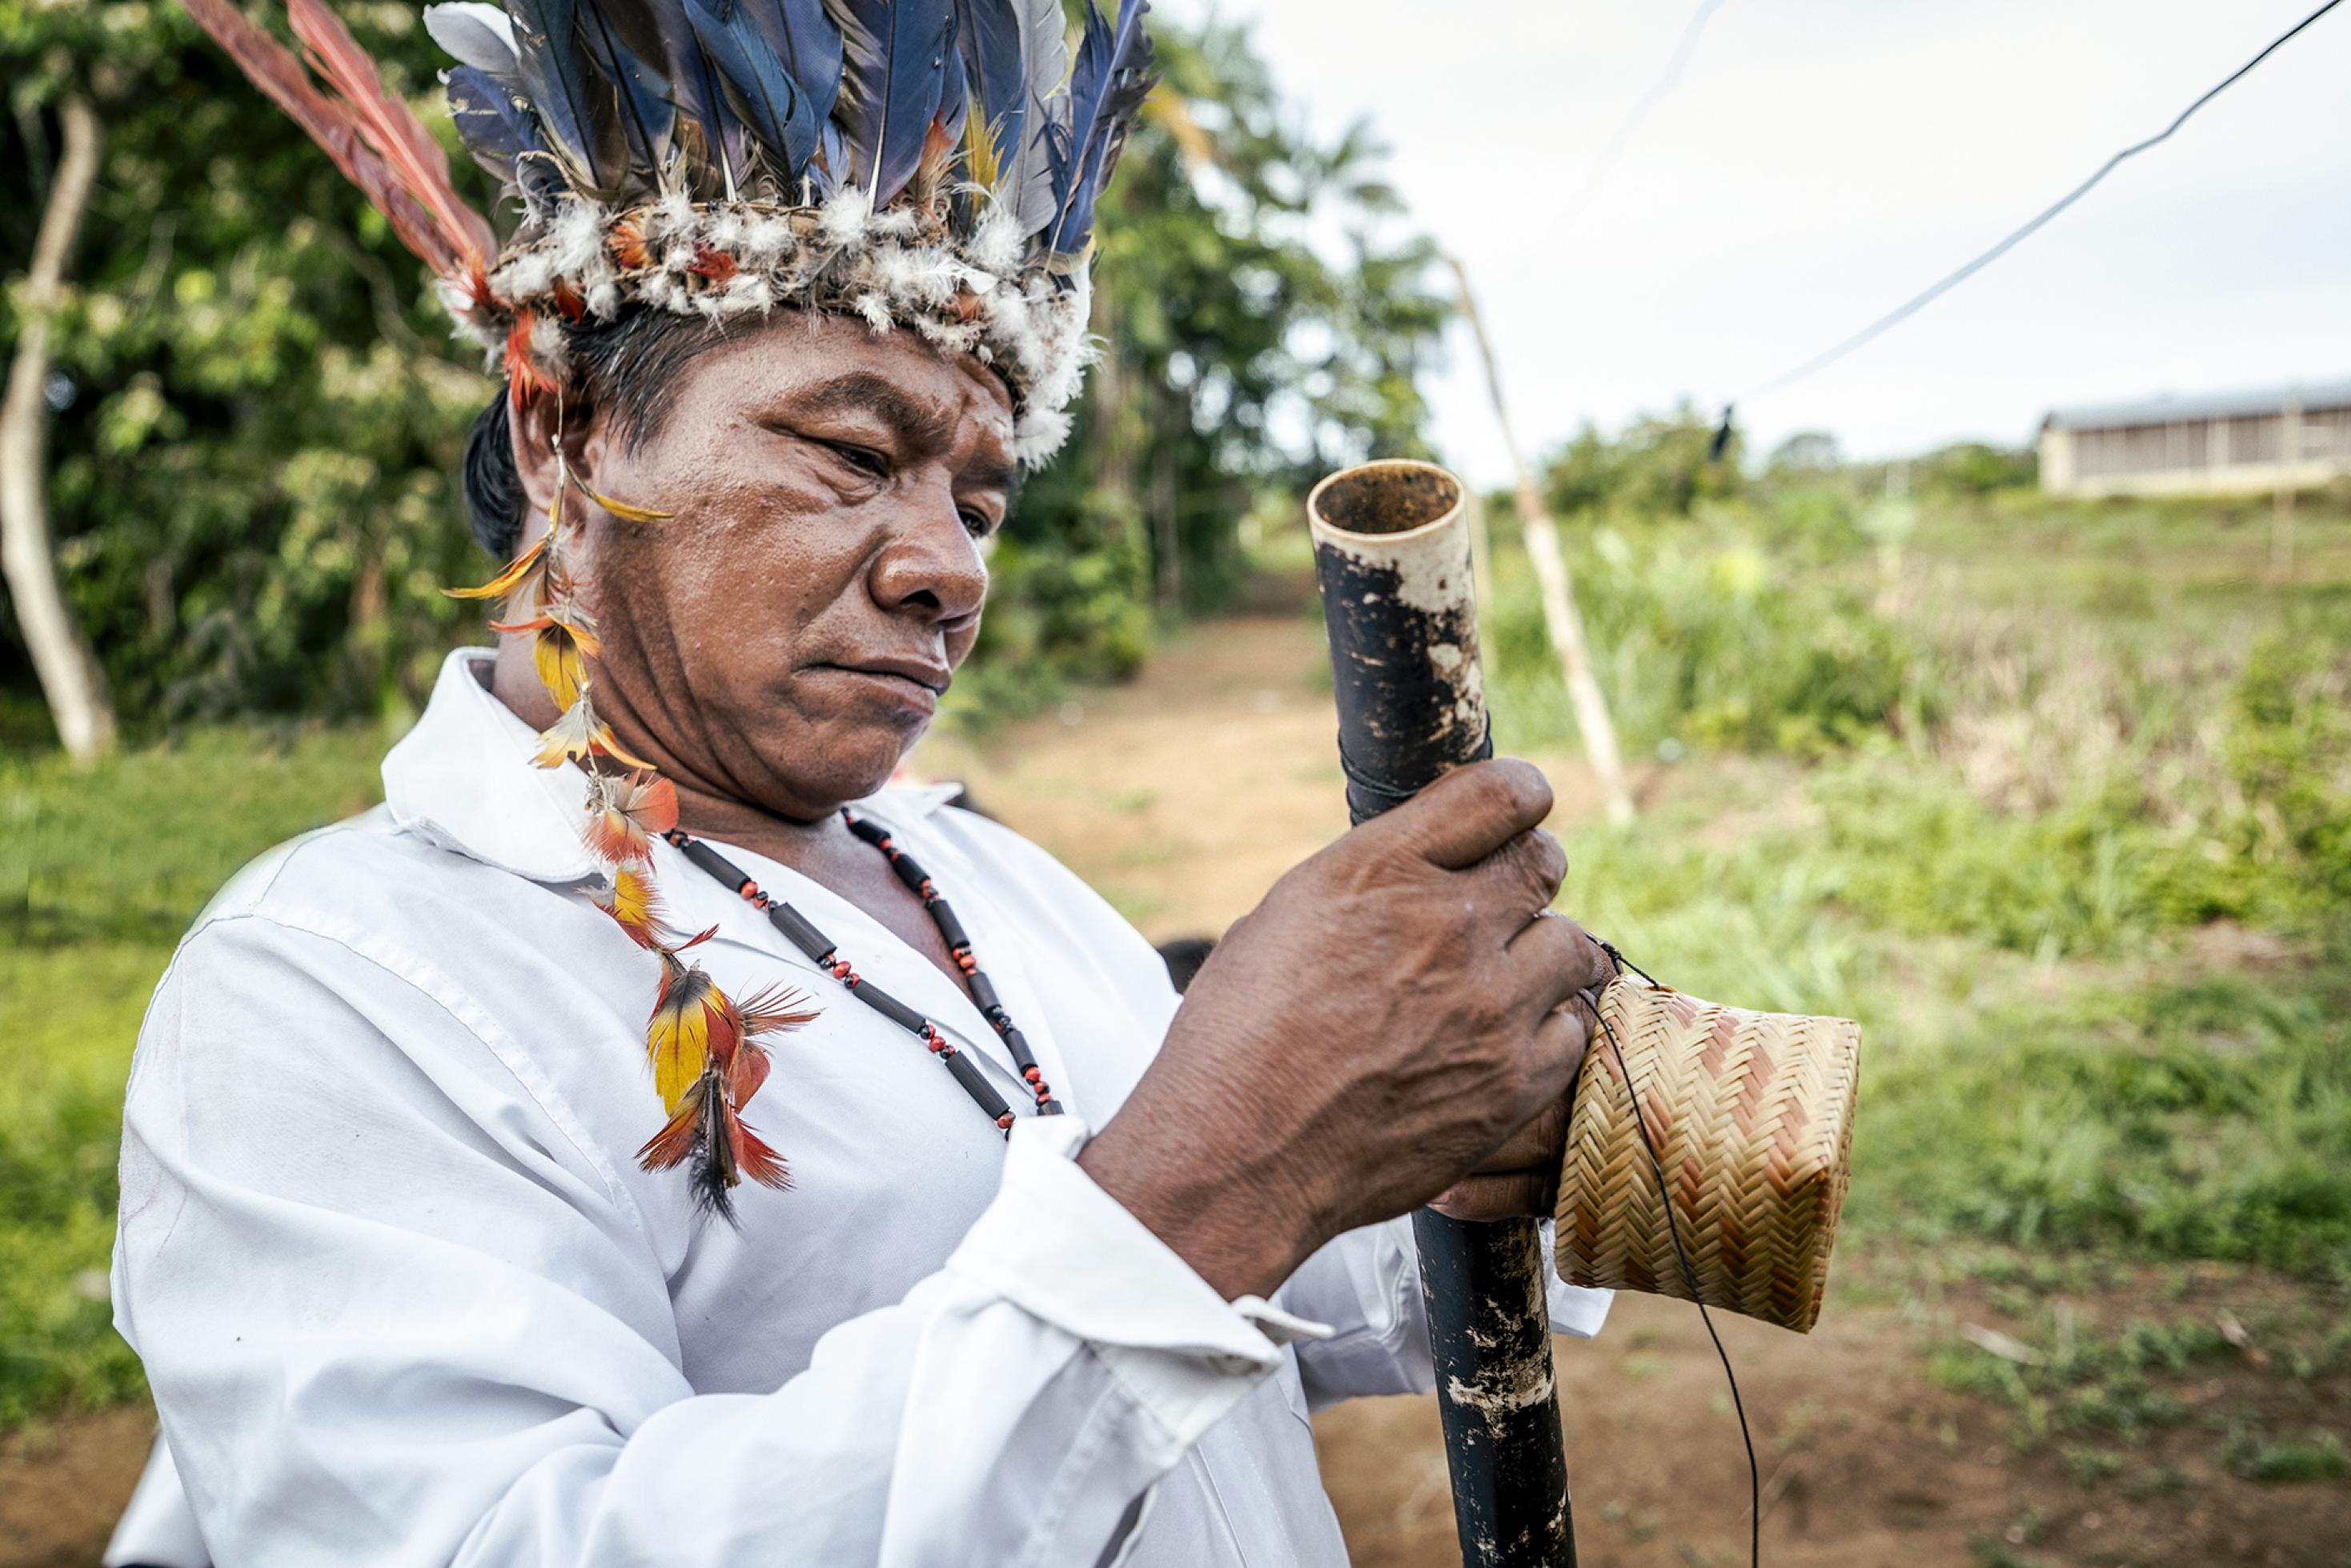 Ein indigener Mann mit Federkopfschmuck blickt prüfend auf ein Rohr.